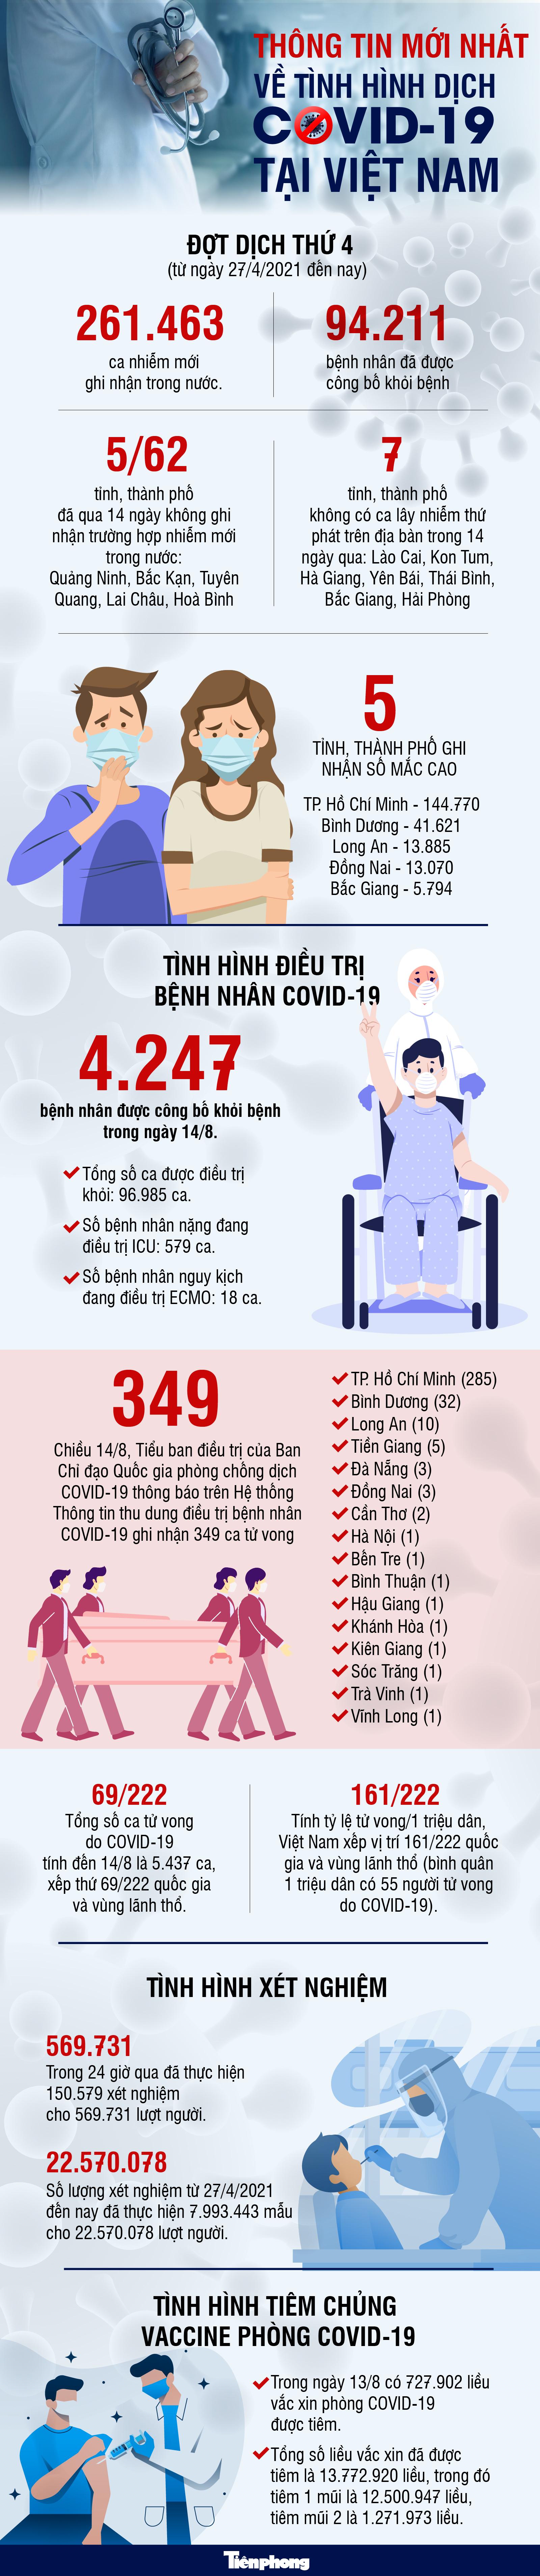 Thông tin mới nhất về tình hình dịch COVID-19 tại Việt Nam - 1